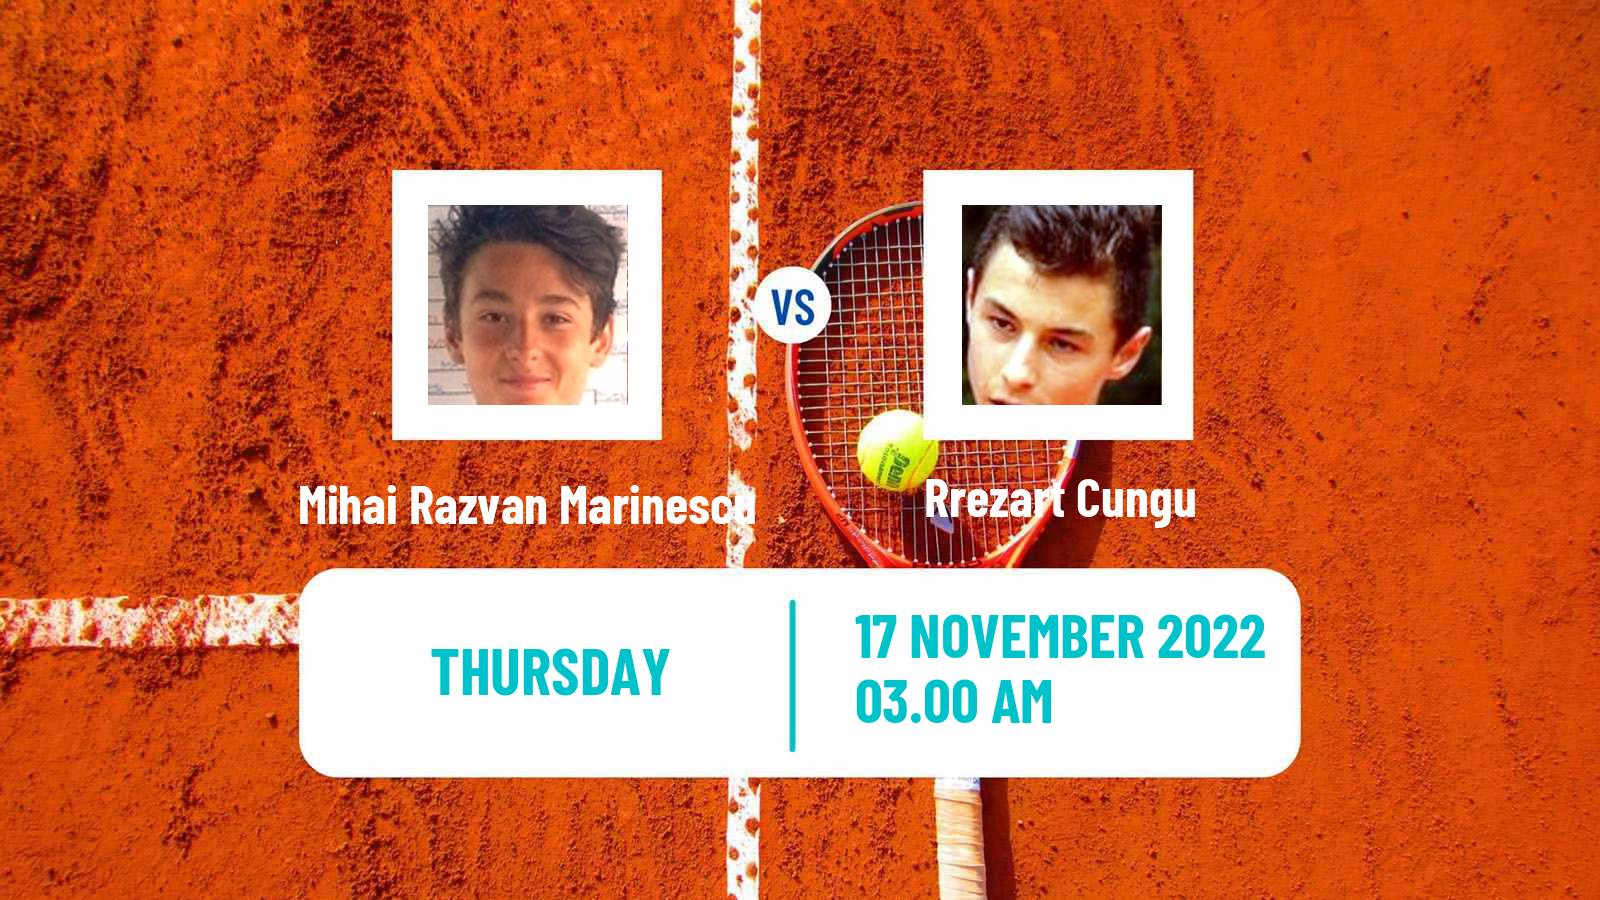 Tennis ITF Tournaments Mihai Razvan Marinescu - Rrezart Cungu